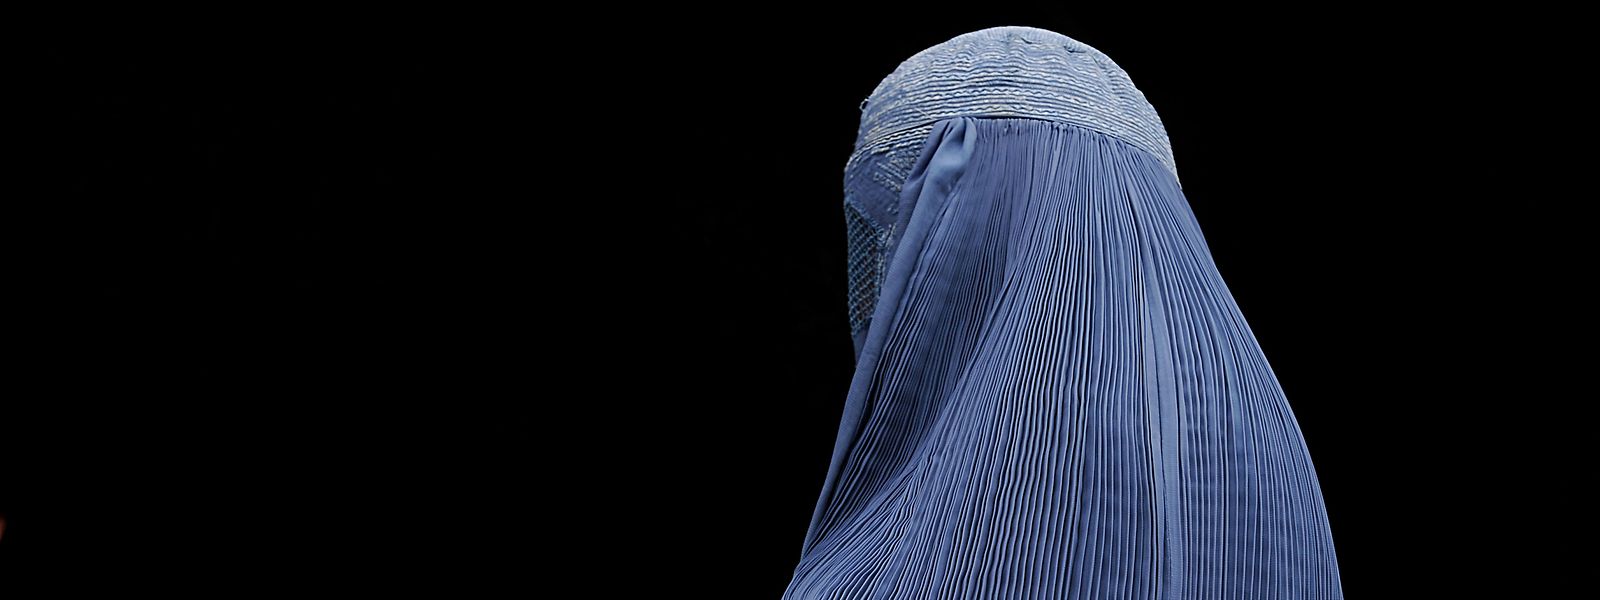 Schon einmal wurden Frauen in Afghanistan unter der Herrschaft der Taliban gezwungen, die Burka zu tragen und konnten nicht ohne männlichen Verwandten das Haus verlassen.